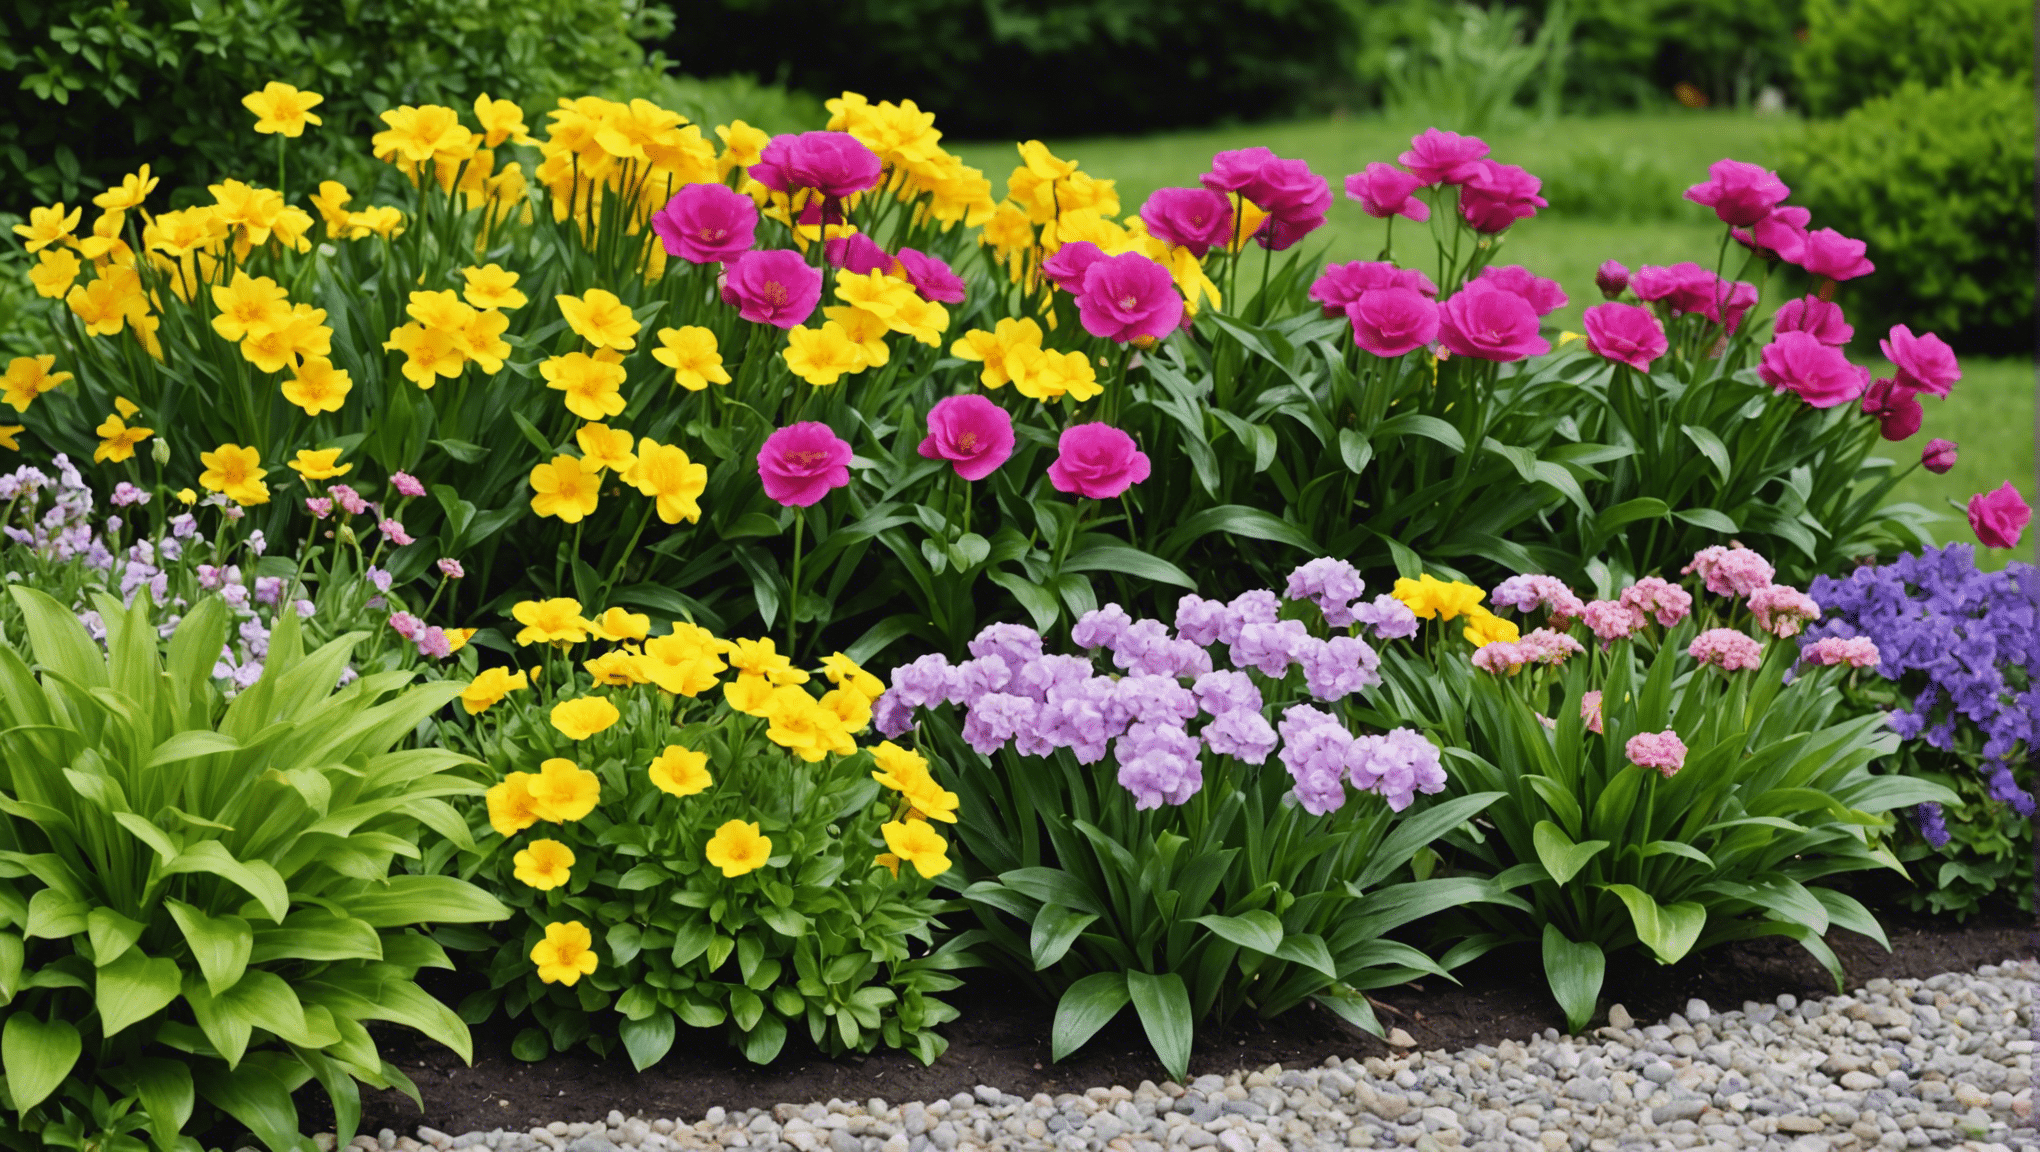 découvrez dans notre article quelles plantes choisir pour embellir votre jardin ce printemps et profiter d'un festival de fleurs éclatantes.